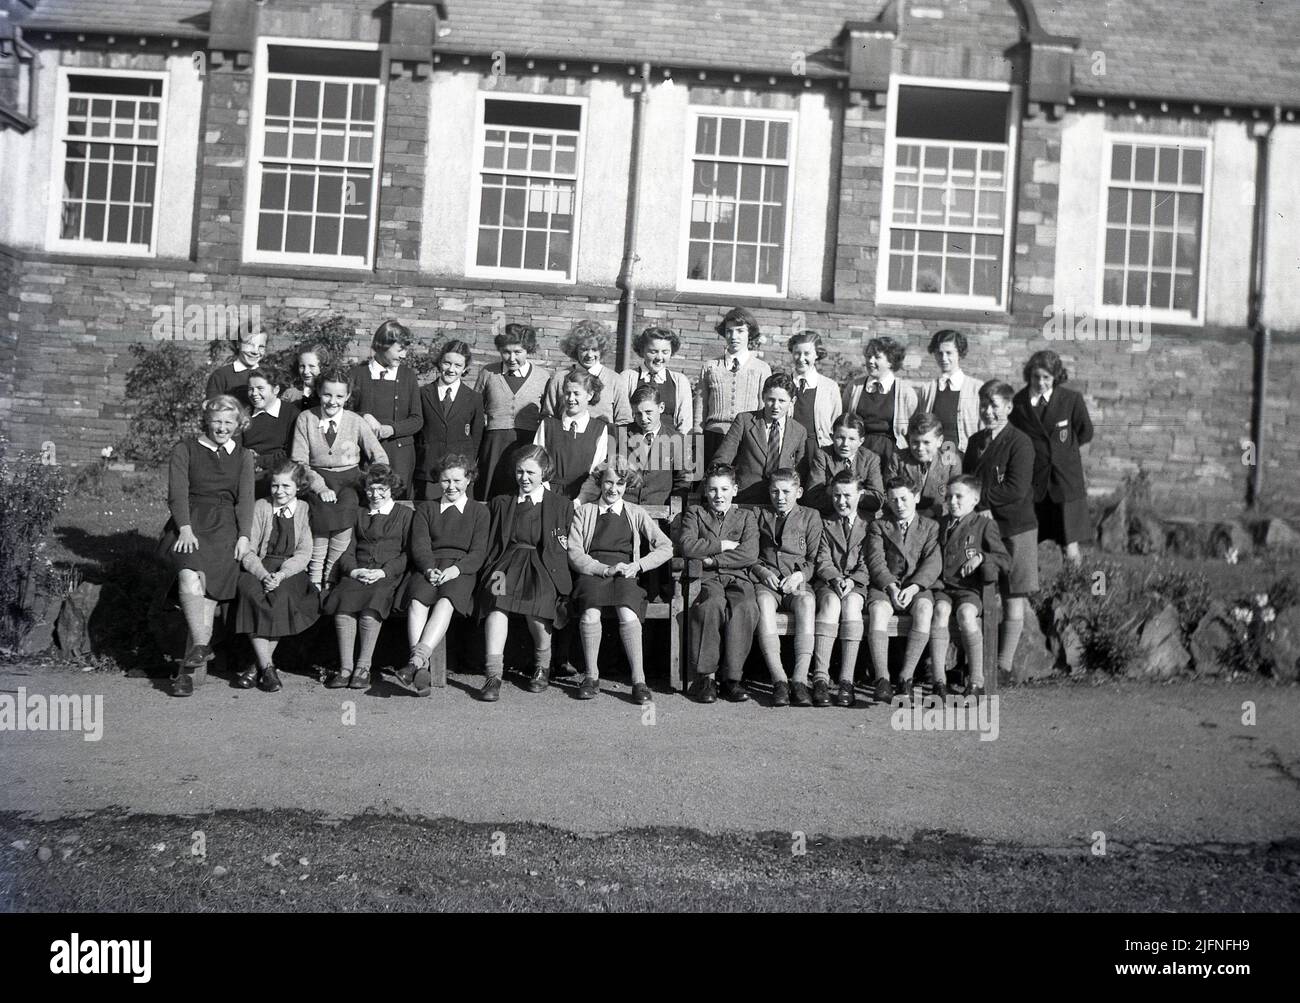 1951, storico, una grande classe di bambini eccitati nella loro uniforme, seduti e in piedi insieme fuori dal loro edificio scolastico per una foto di classe di gruppo, Inghilterra, Regno Unito. Foto Stock